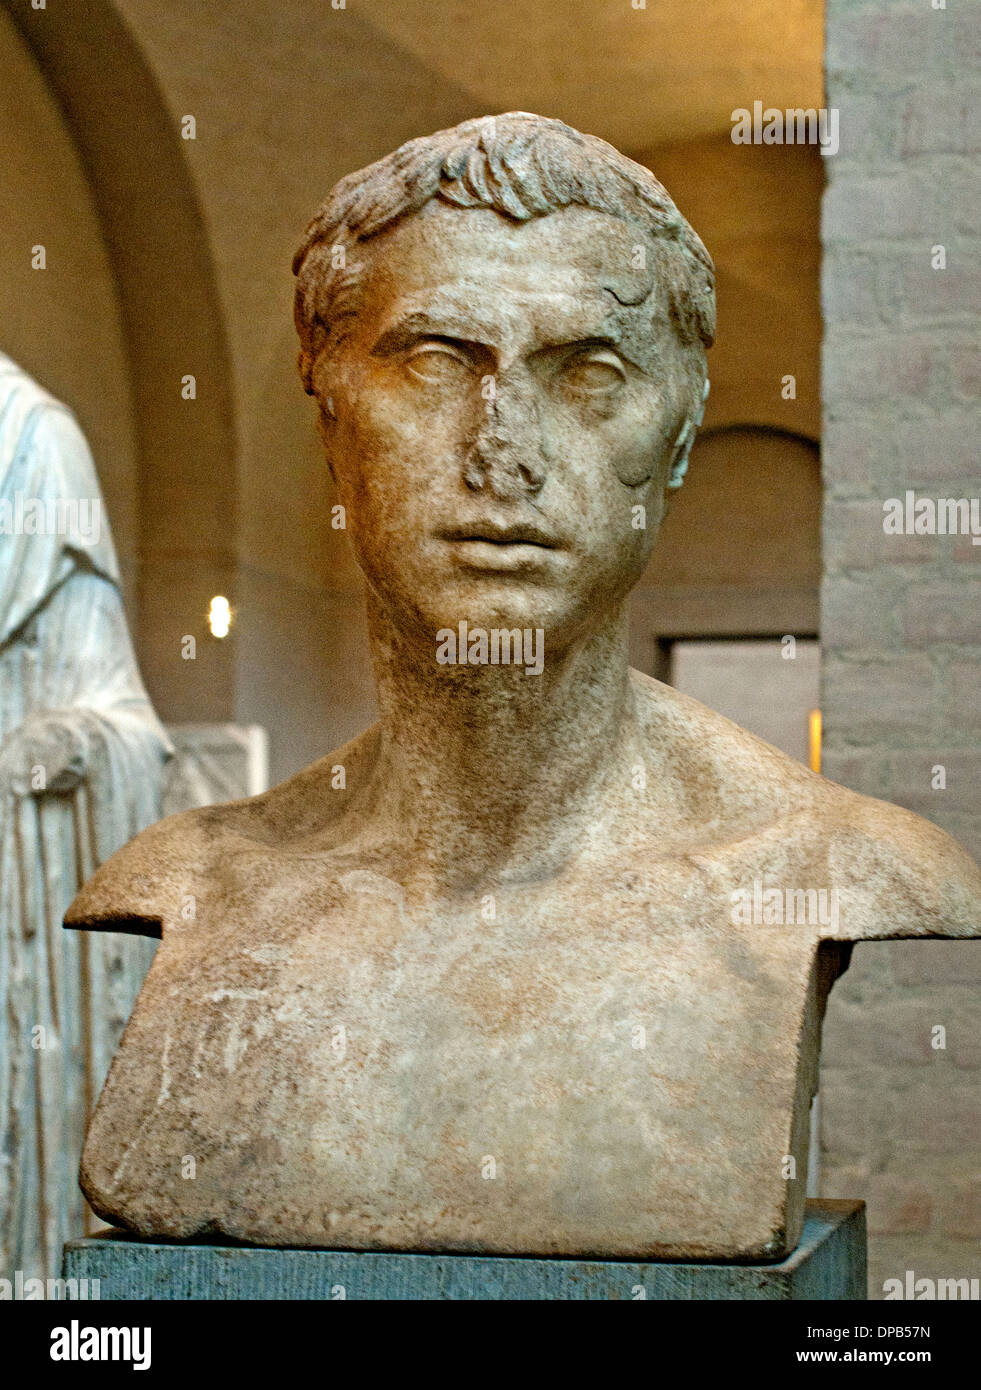 Buste, à partir d'un roman, herma 30-20 av. J.-C. Rome Italie Italien Banque D'Images